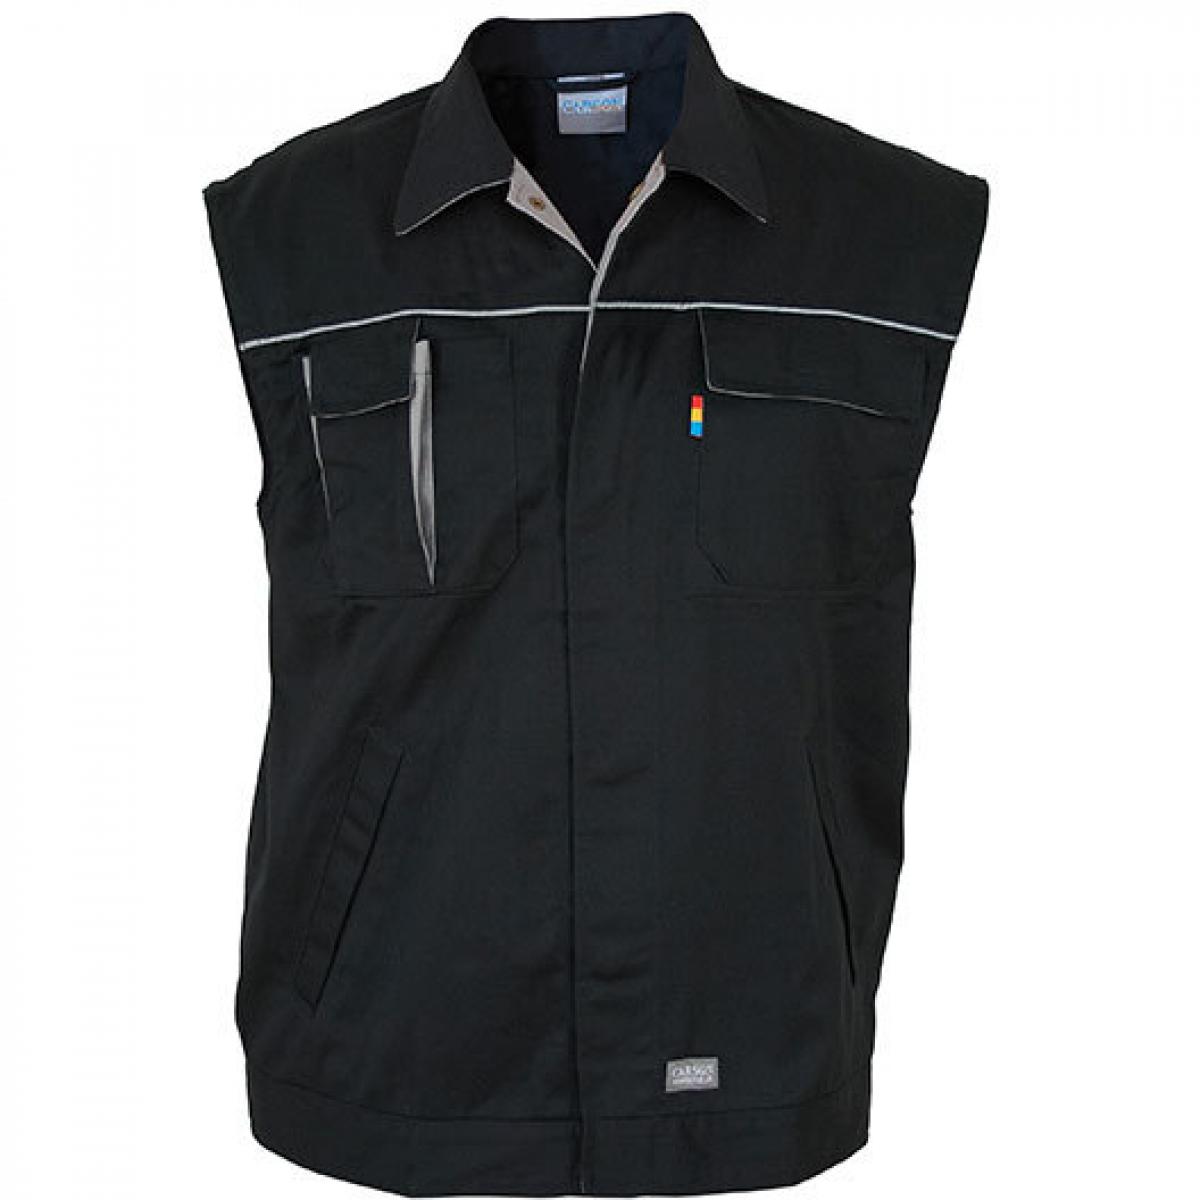 Hersteller: Carson Contrast Herstellernummer: CC700 Artikelbezeichnung: Herren Contrast Work Vest / Bei 60 Grad waschbar Farbe: Black/Grey